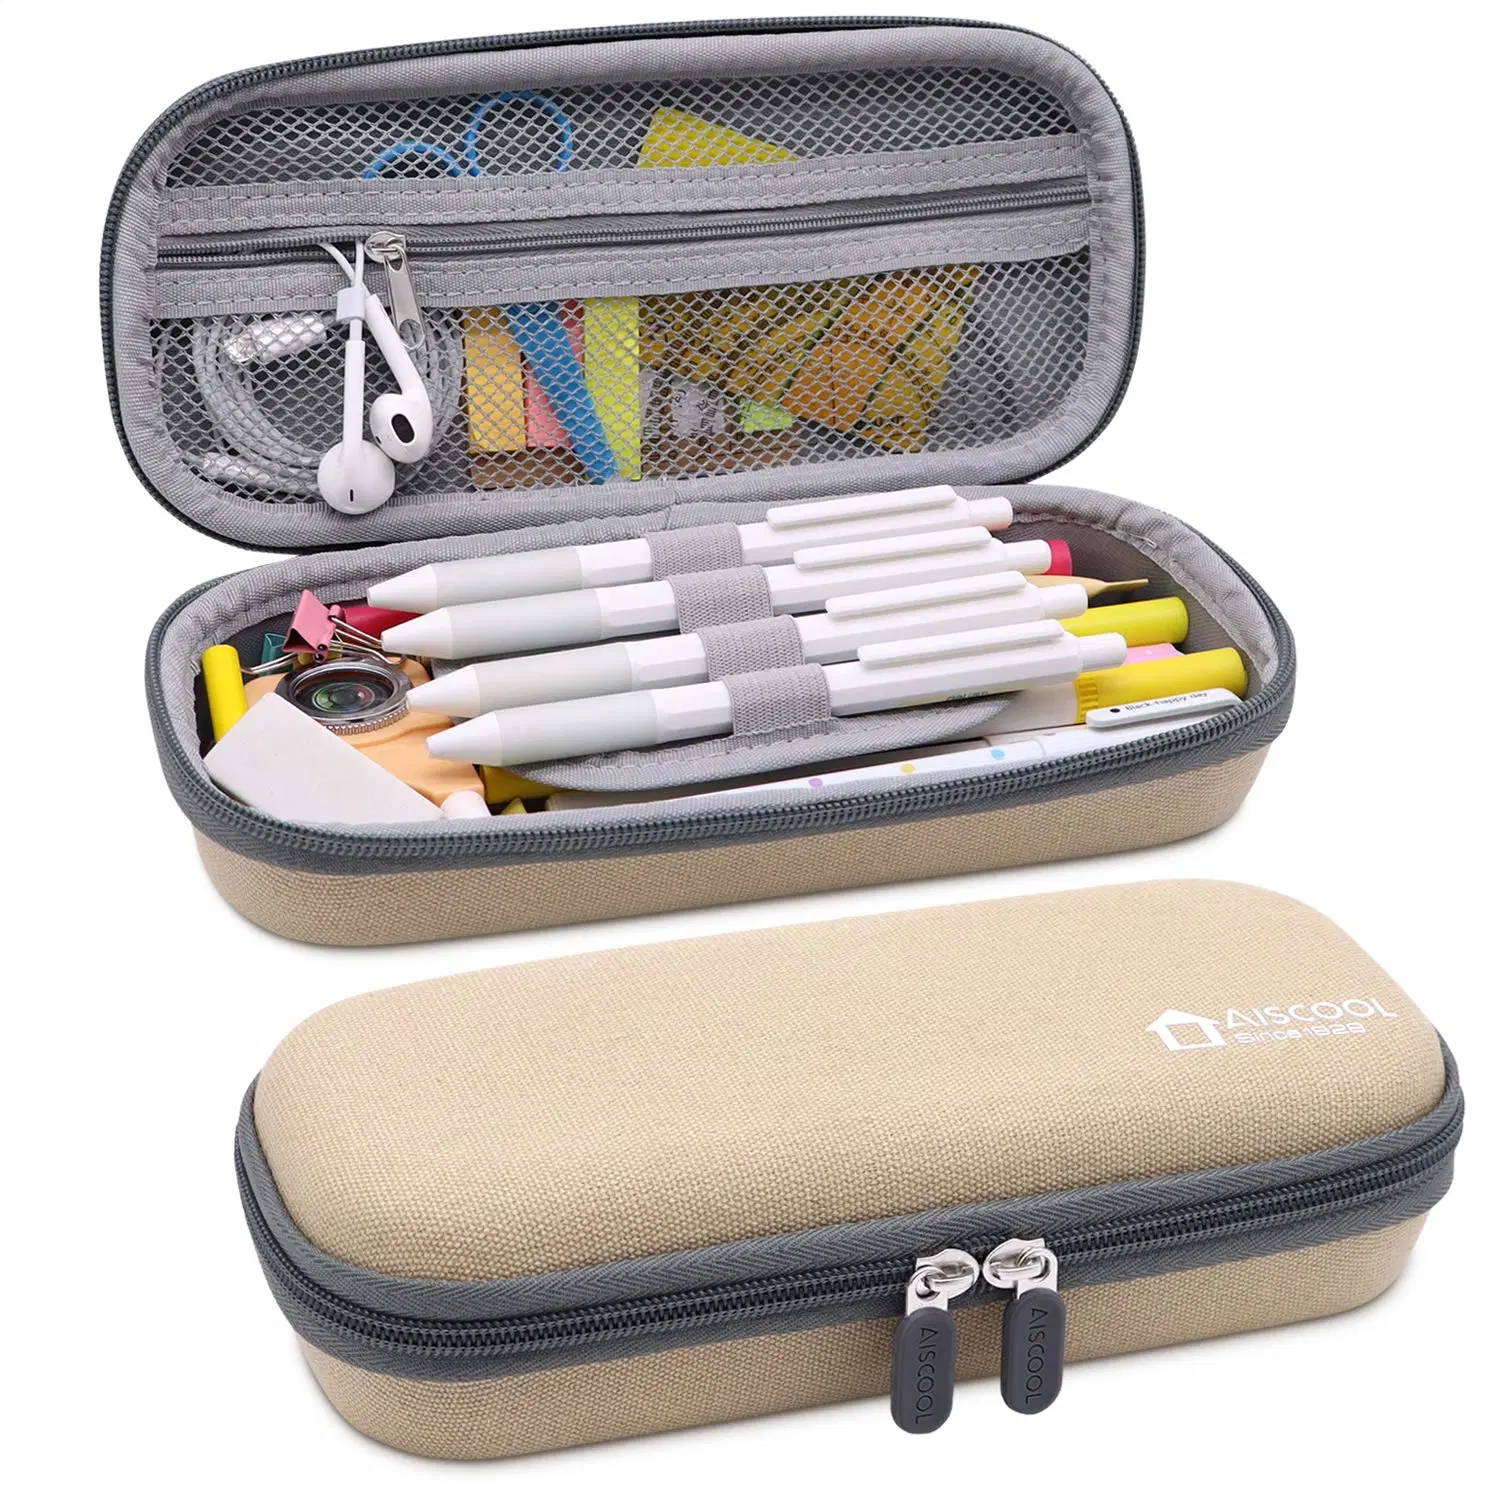 Жесткий карандаш для перьев чехол для канва сумка для сумки большой емкости Канцелярские принадлежности для школьных принадлежностей Офисные материалы